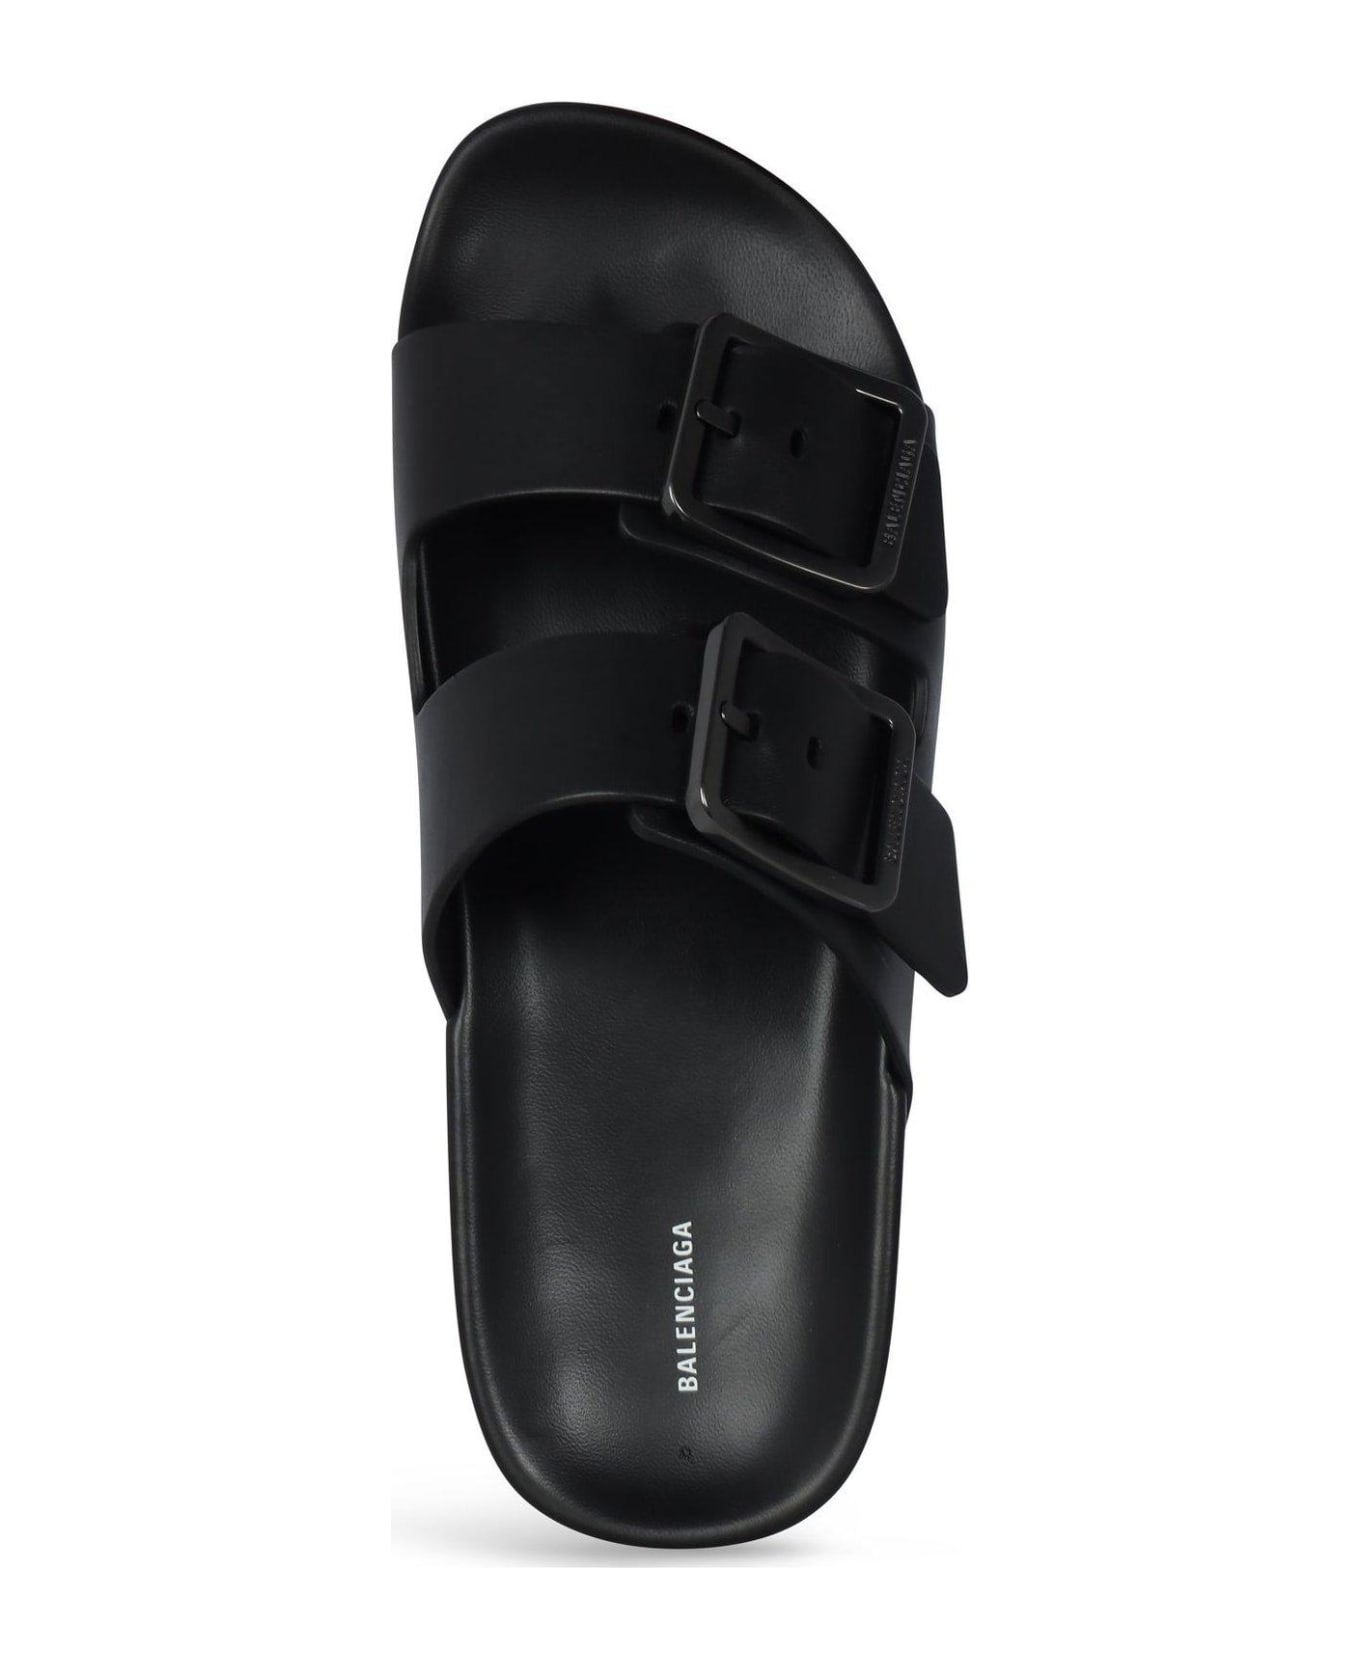 Balenciaga Mallorca Strap Sandals - BLACK